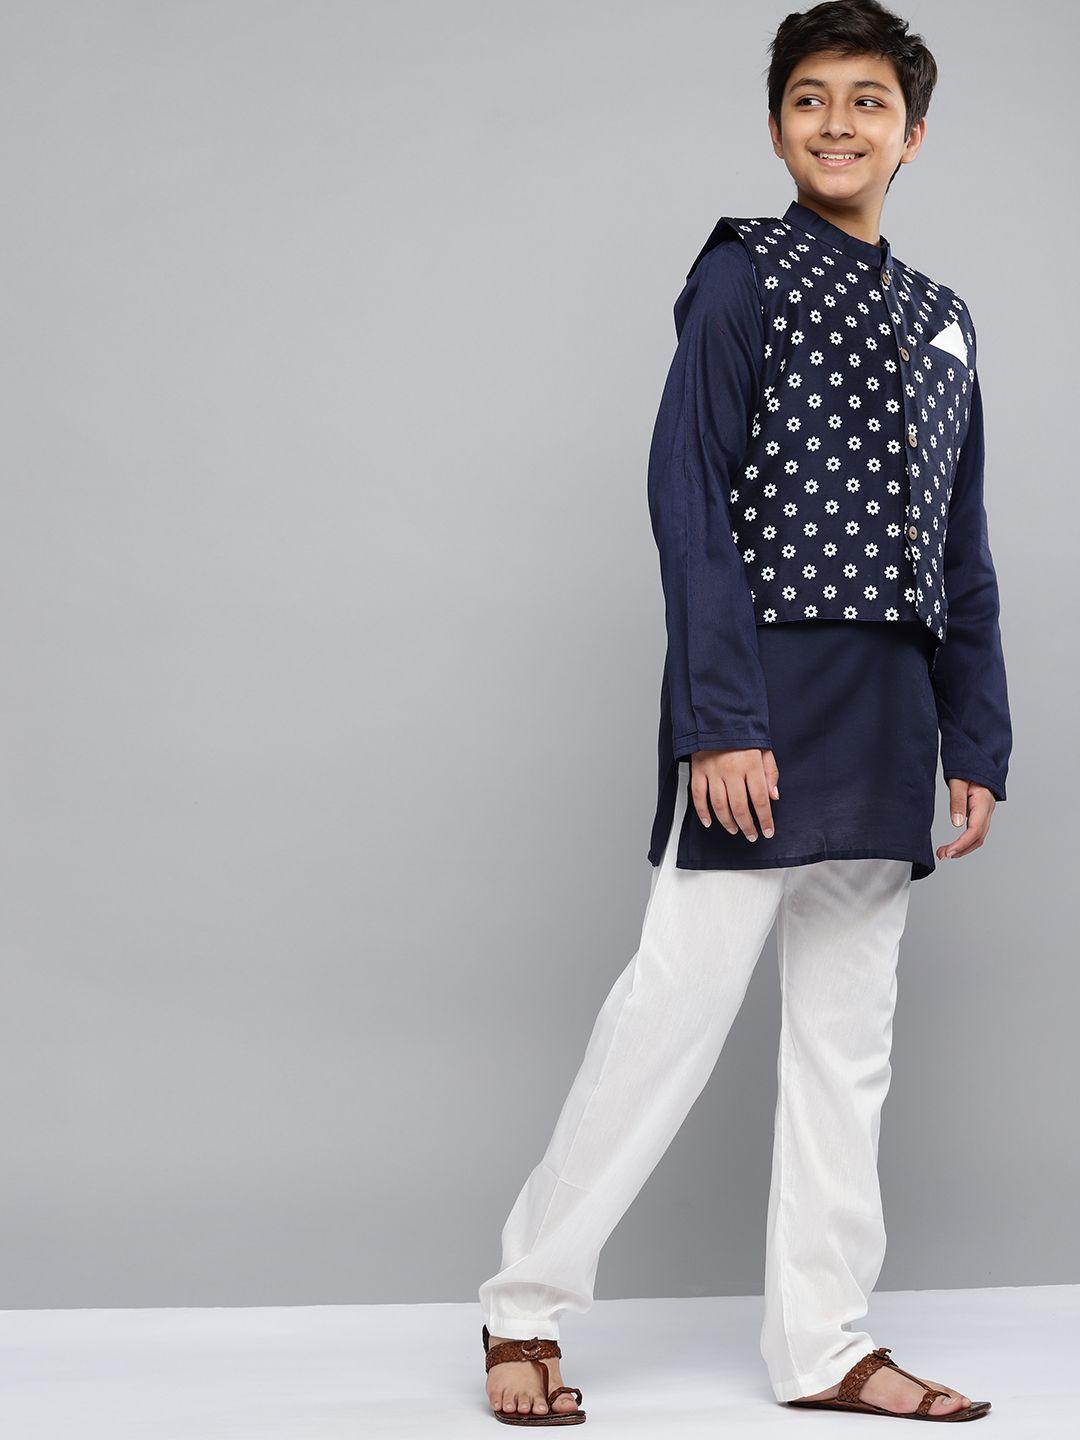 yk-boys-navy-blue-printed-kurta-with-white-pyjamas-&-nehru-jacket